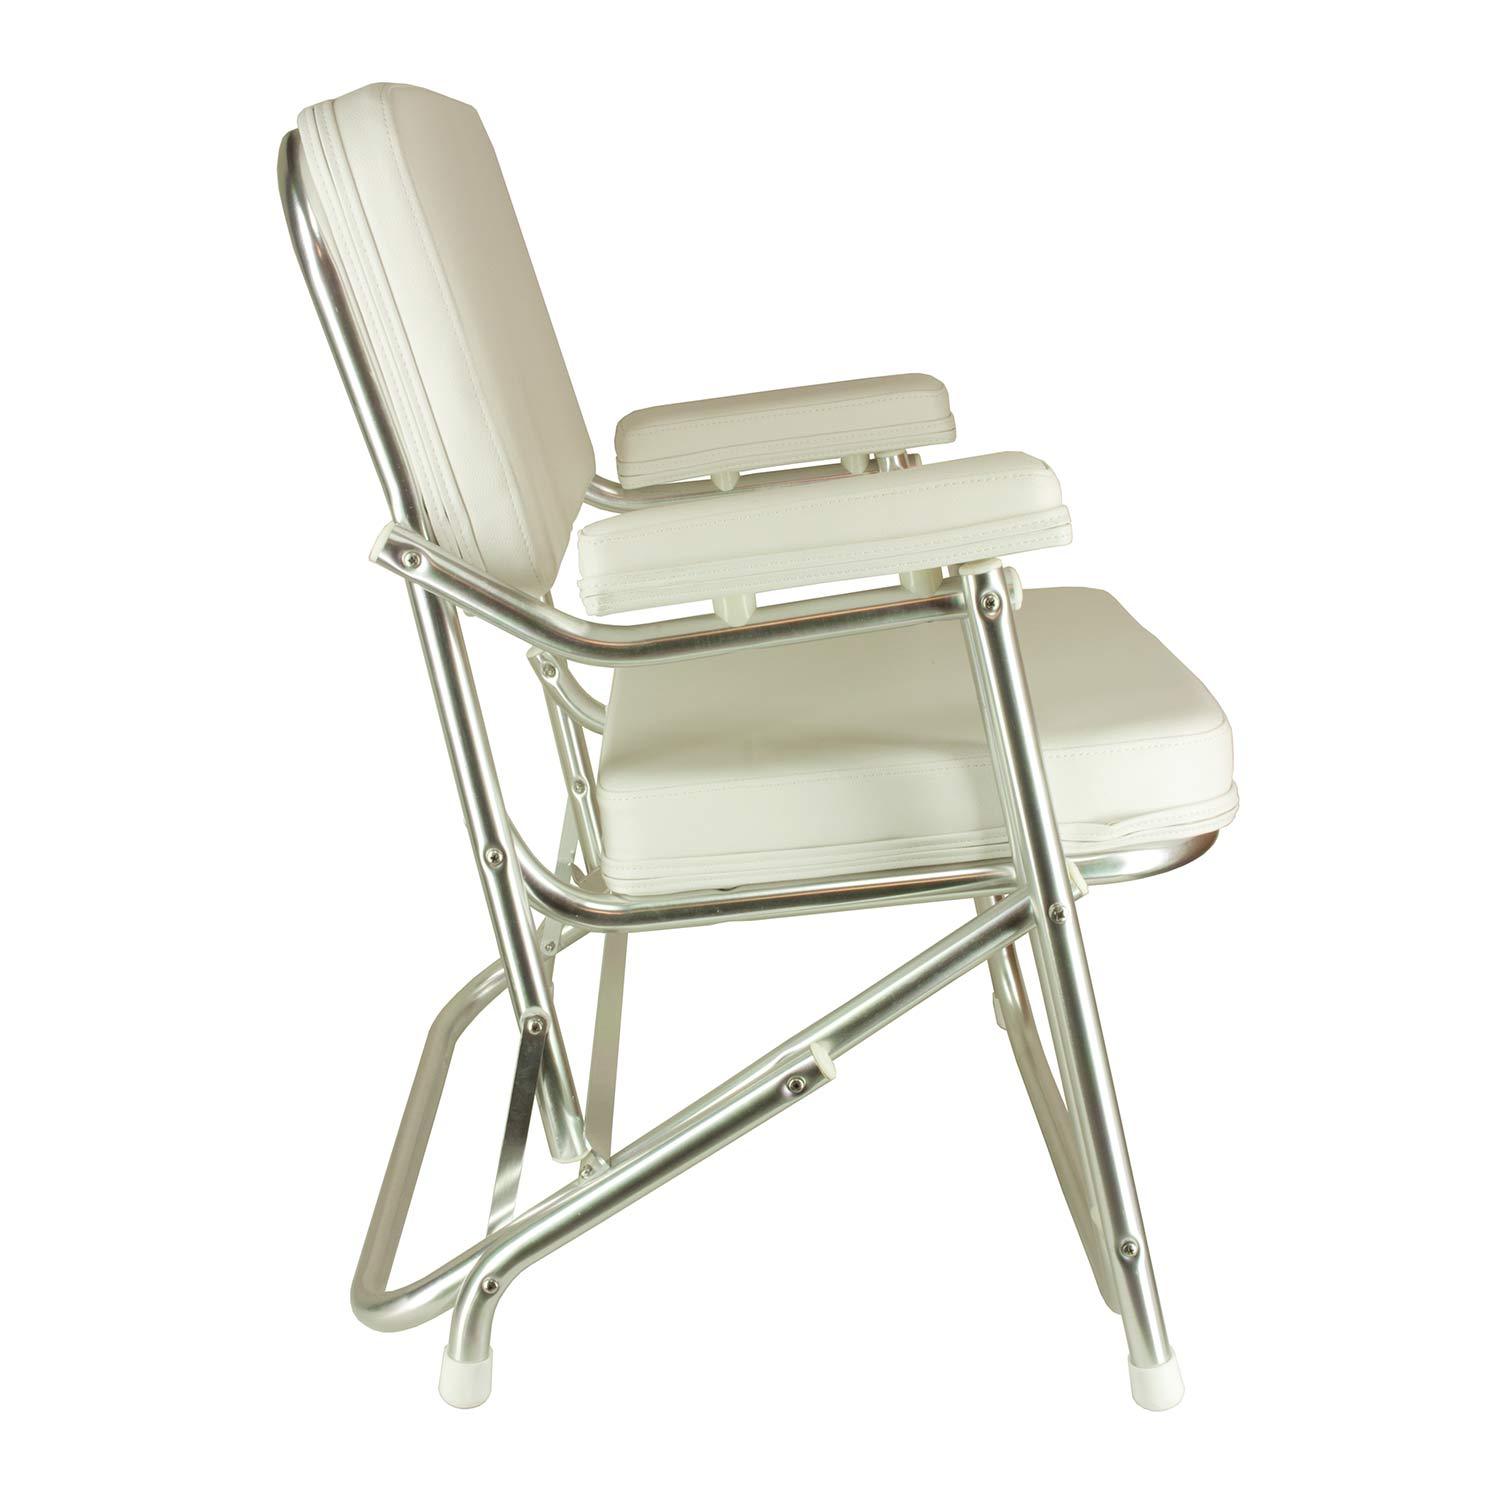 SPRINGFIELD Aluminum Folding Deck Chair